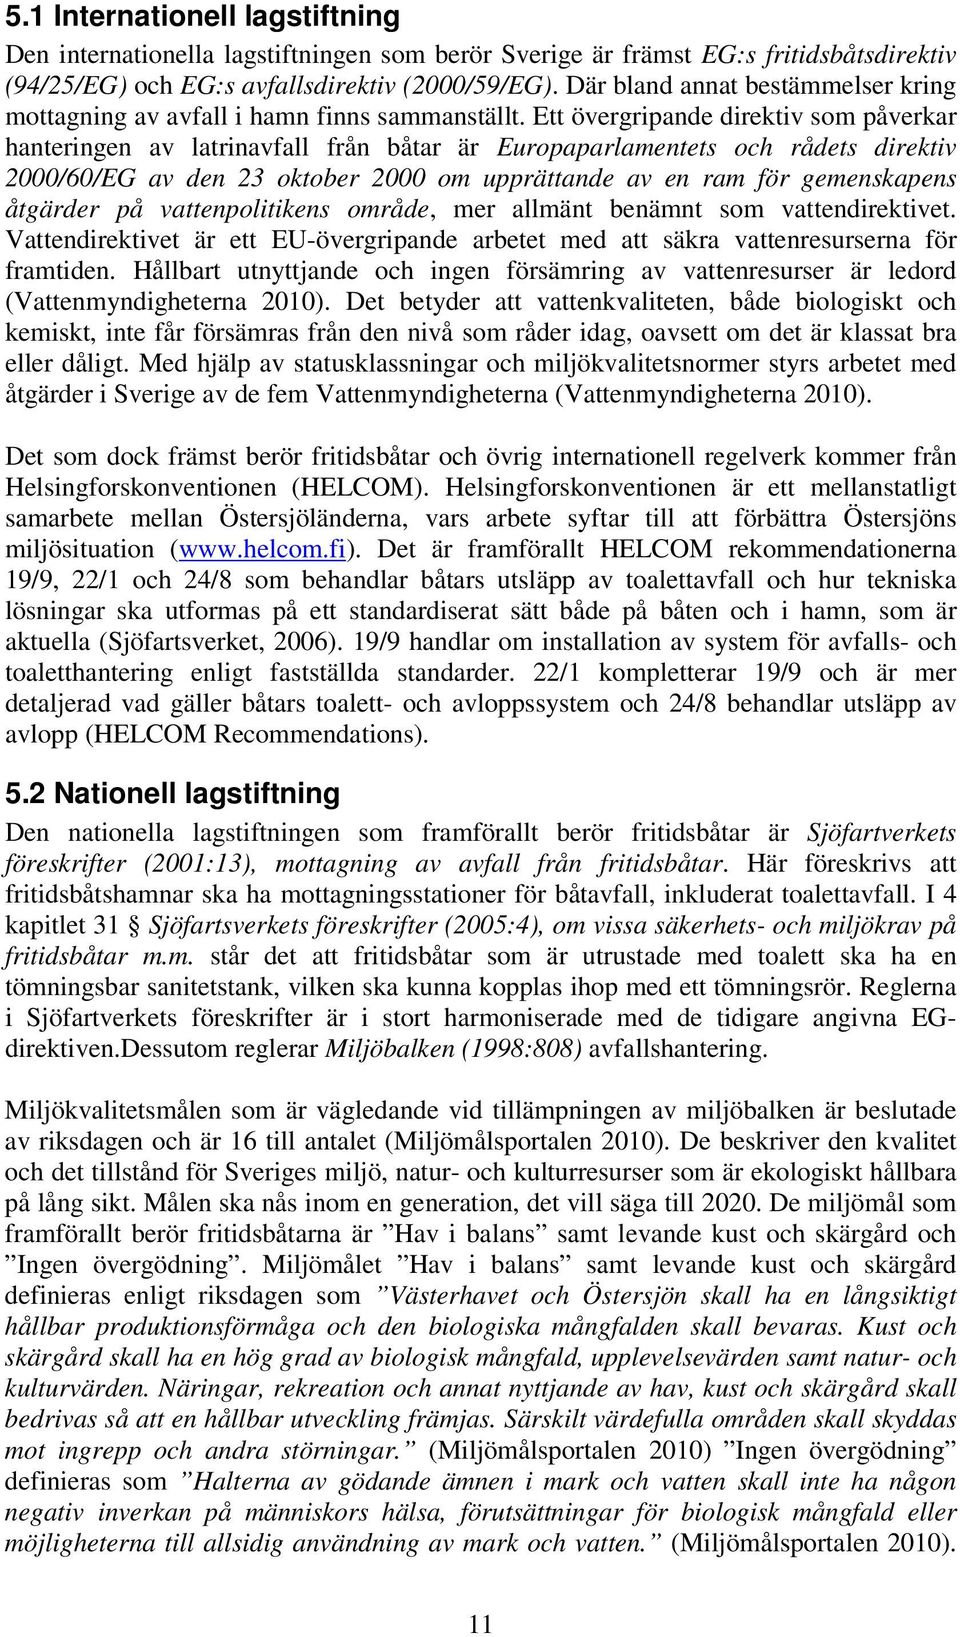 Ett övergripande direktiv som påverkar hanteringen av latrinavfall från båtar är Europaparlamentets och rådets direktiv 2000/60/EG av den 23 oktober 2000 om upprättande av en ram för gemenskapens